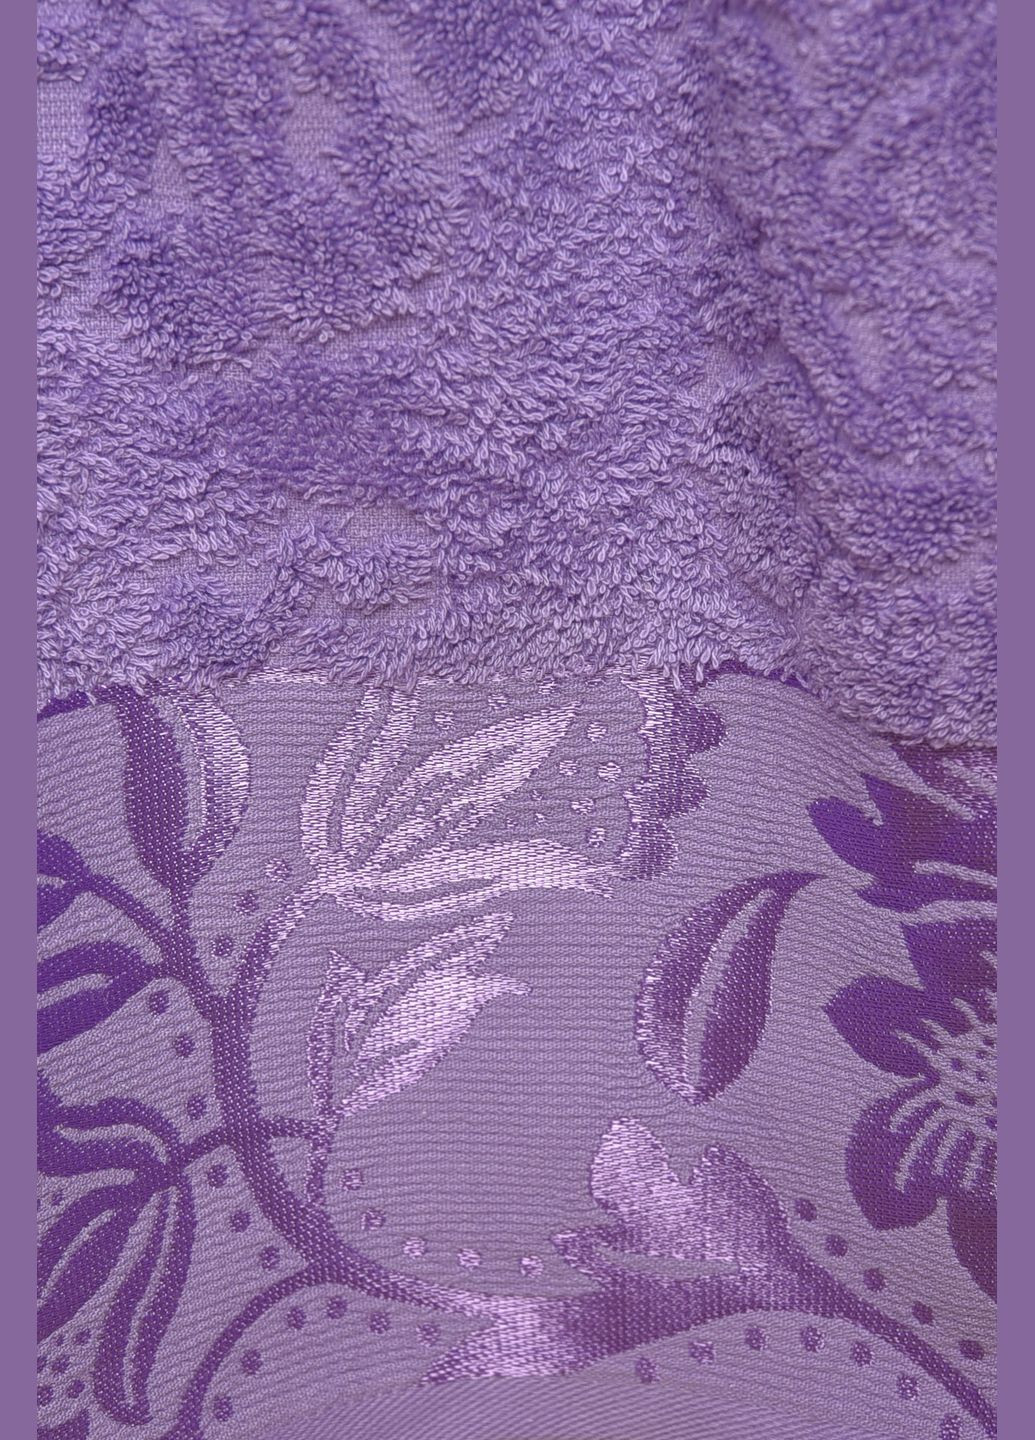 Let's Shop полотенце банное махровое фиолетового цвета однотонный фиолетовый производство - Турция